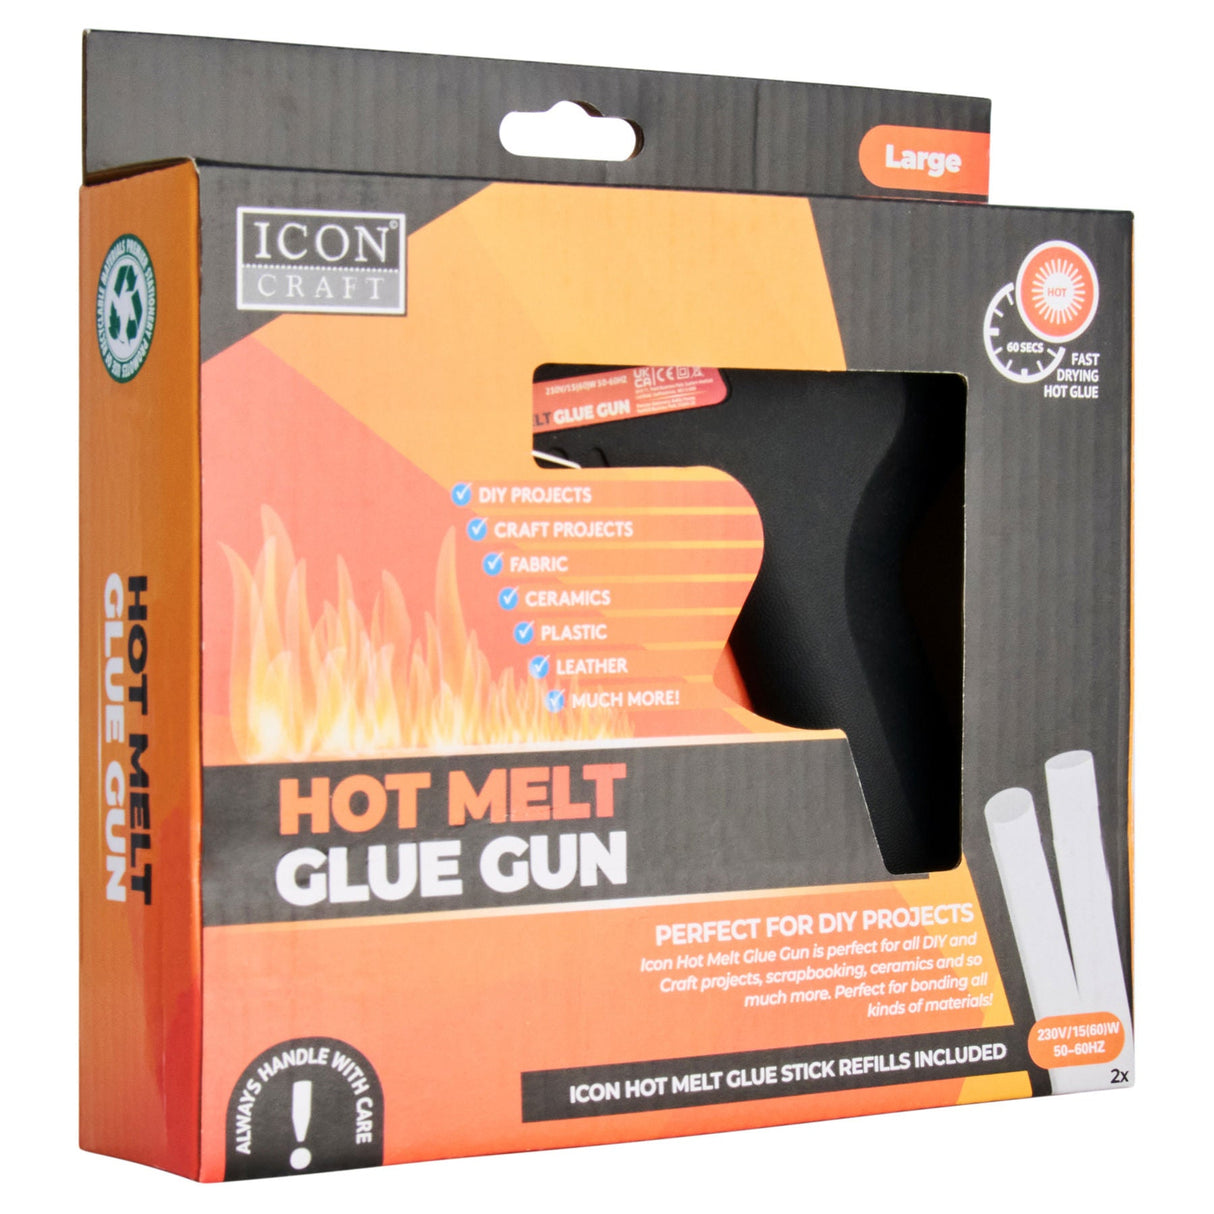 Icon Hot Melt Large Glue Gun - Black | Stationery Shop UK